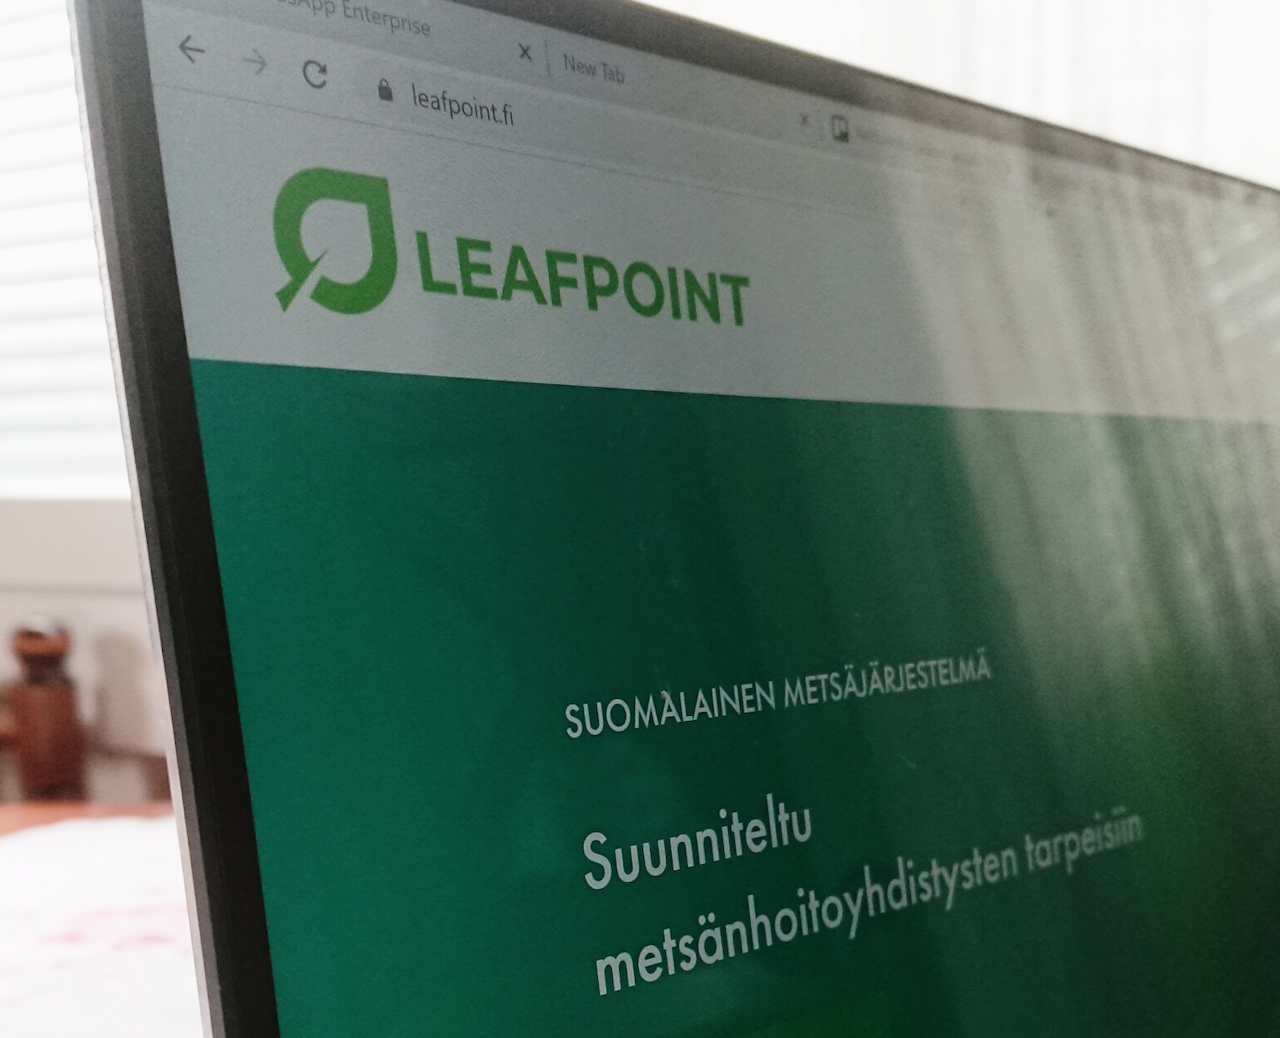 Uusi metsäjärjestelmä Leafpoint käyttöön Mhy Savotassa